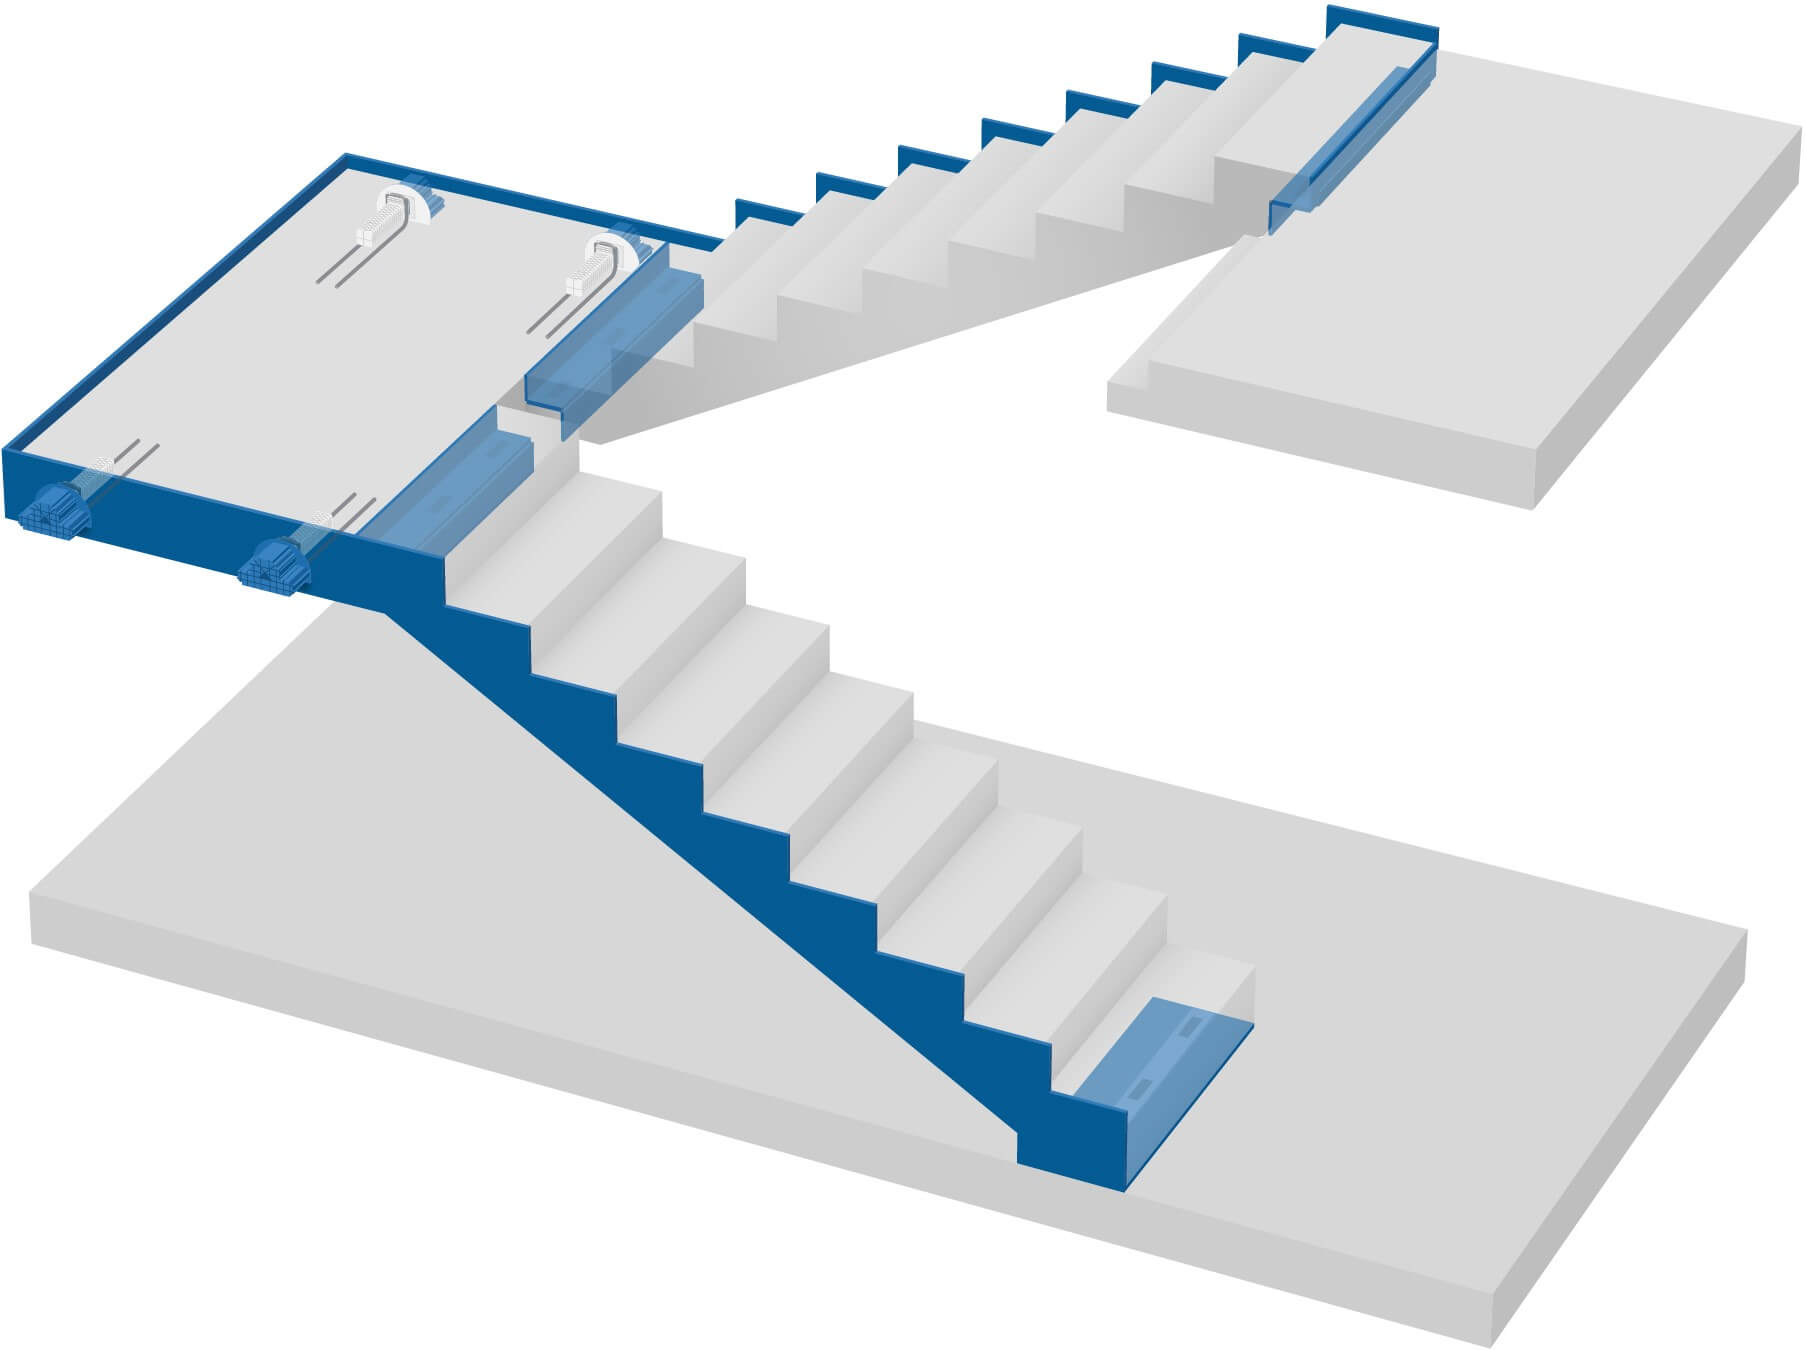 Tramo de escalera recto, tramo de escalera y tarima desacoplados: optimización para pieza prefabricada